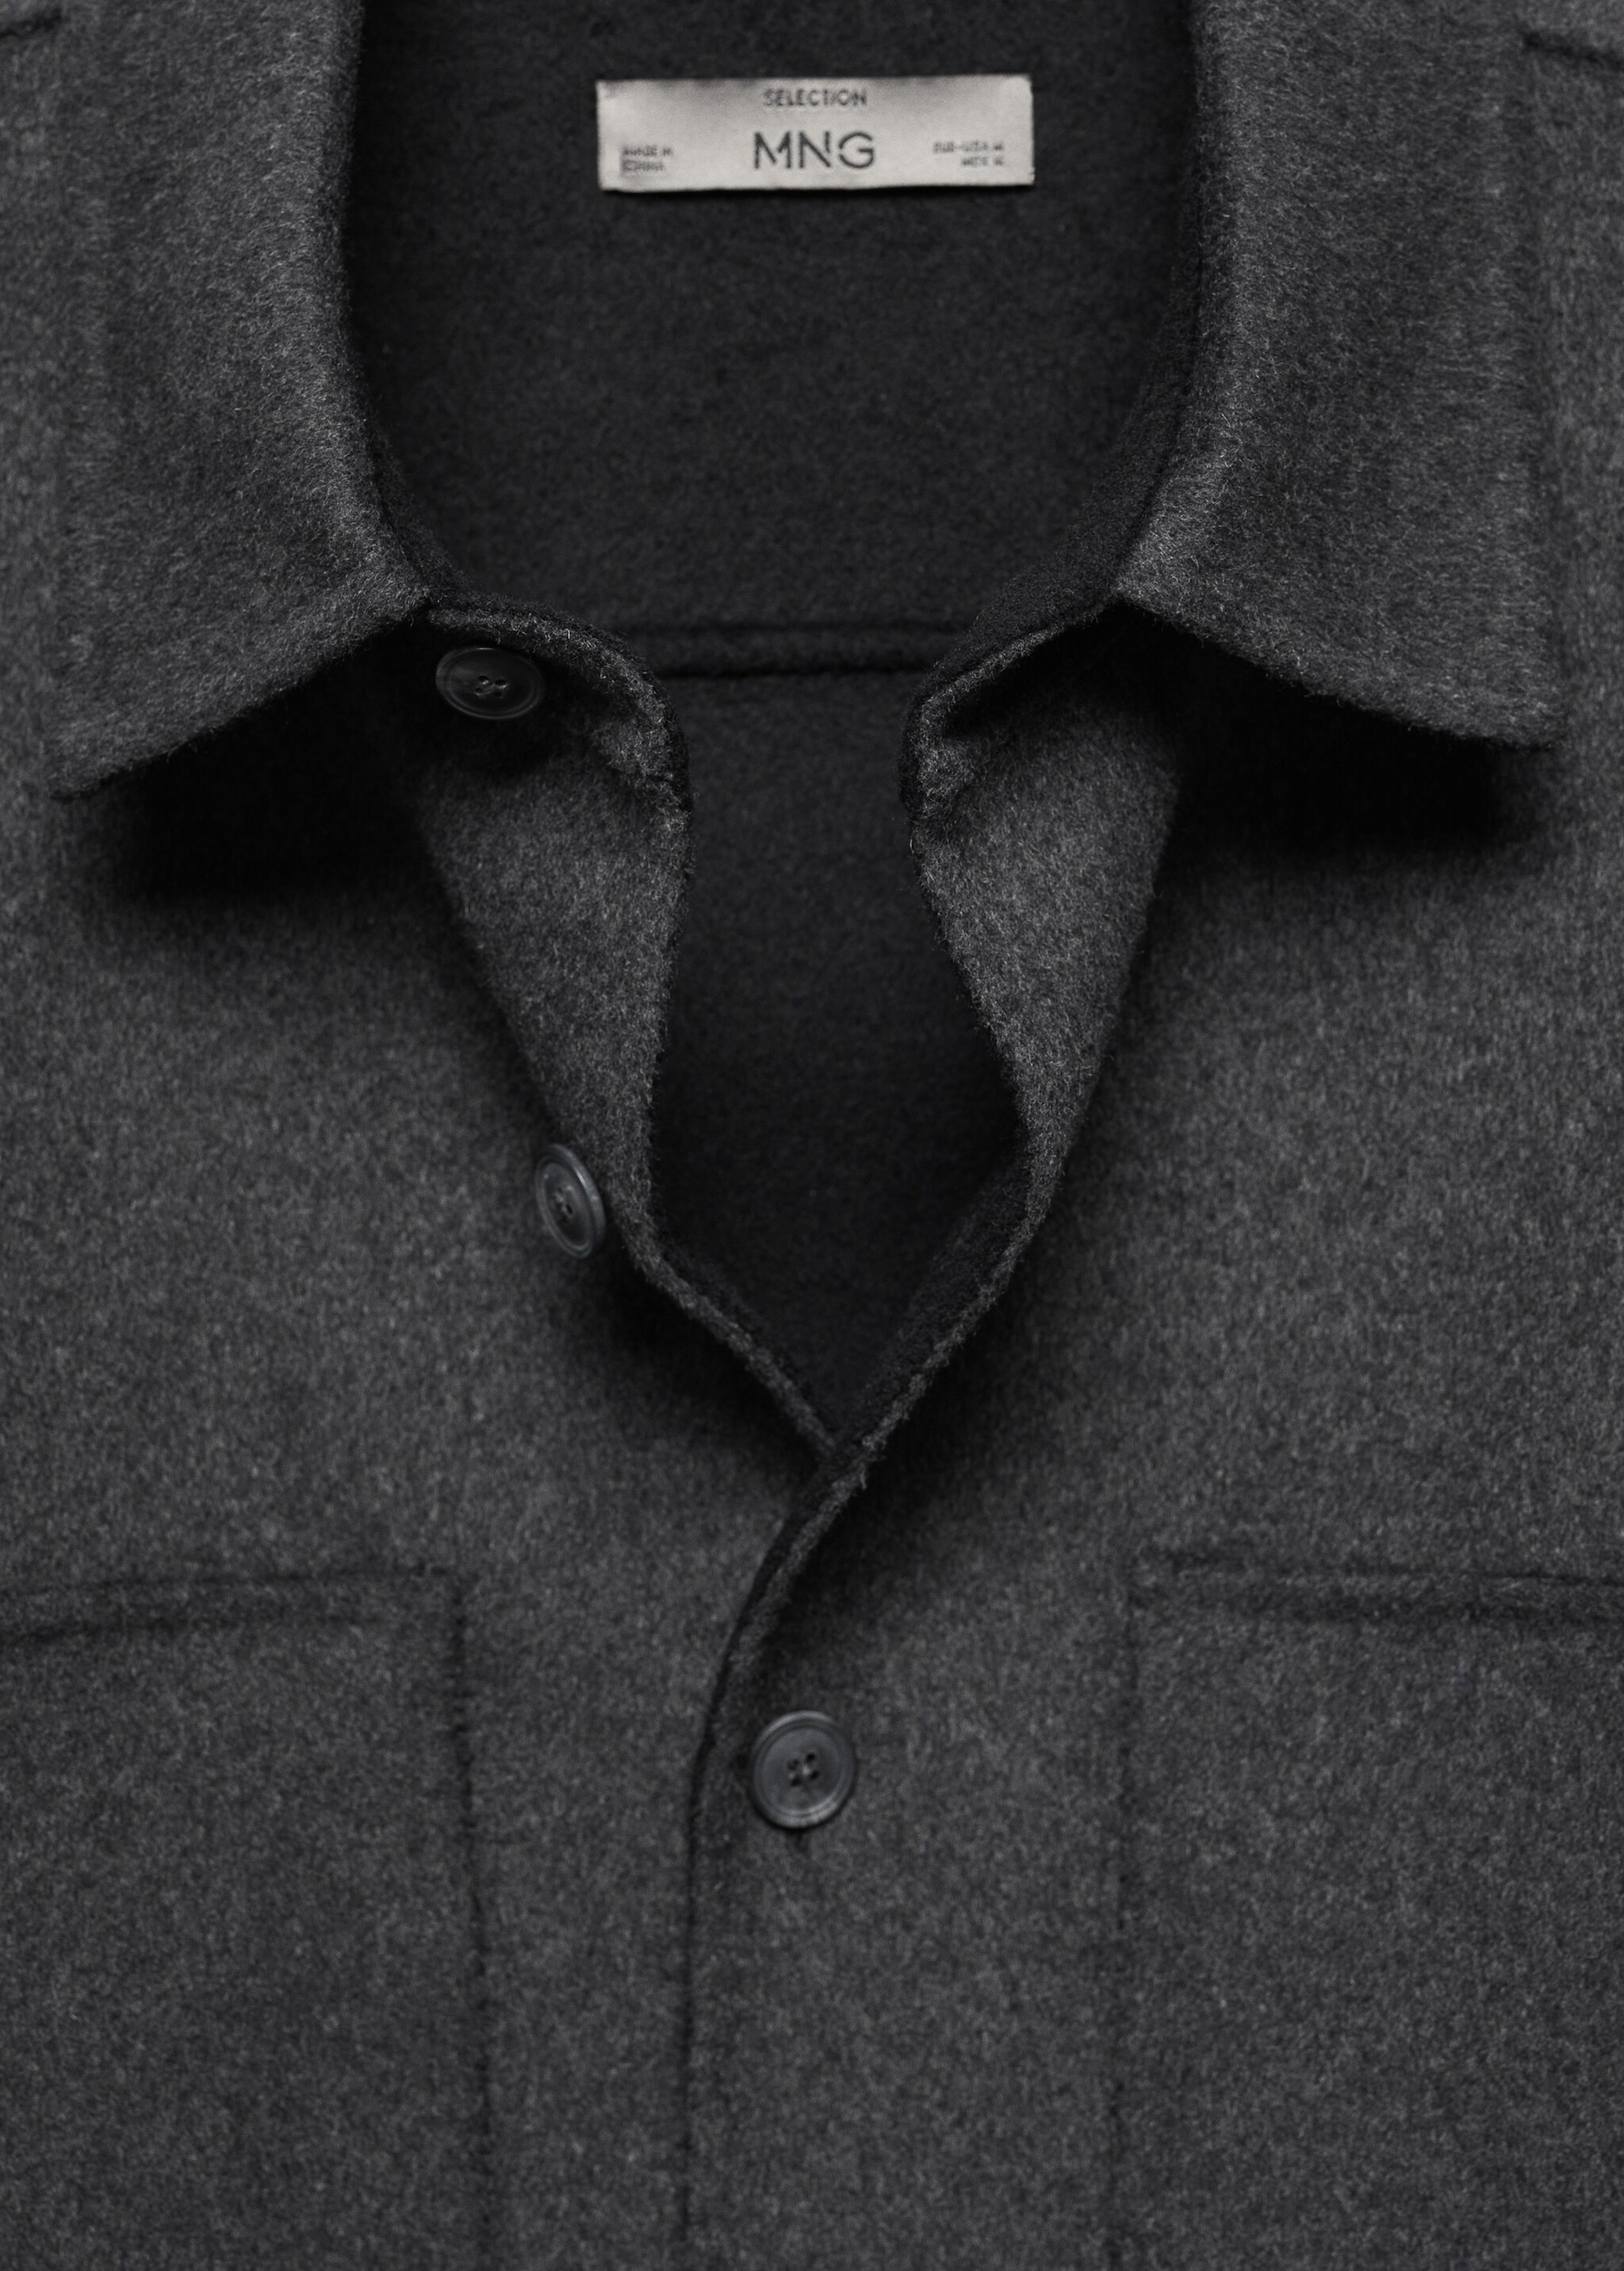 Doubleface-Overshirt aus Wolle mit Taschen - Detail des Artikels 8